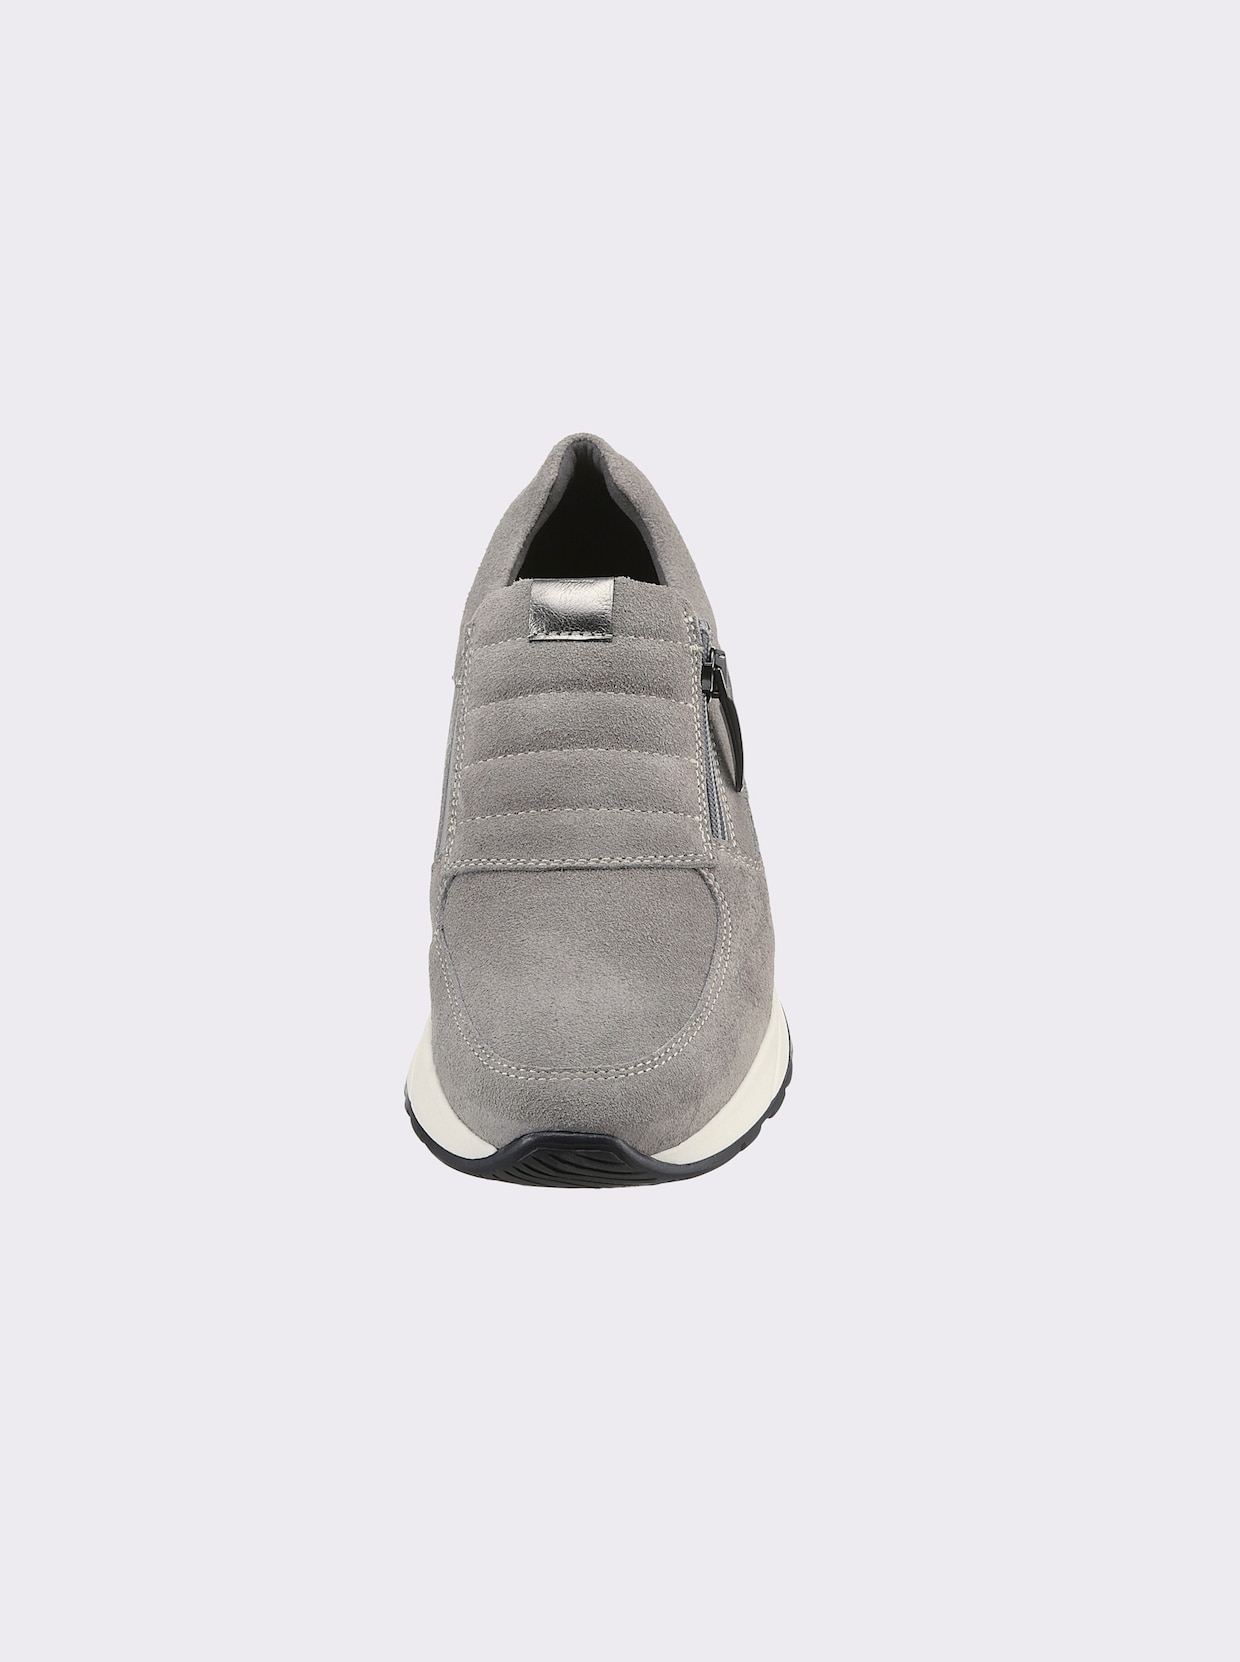 heine Sneaker - grijs